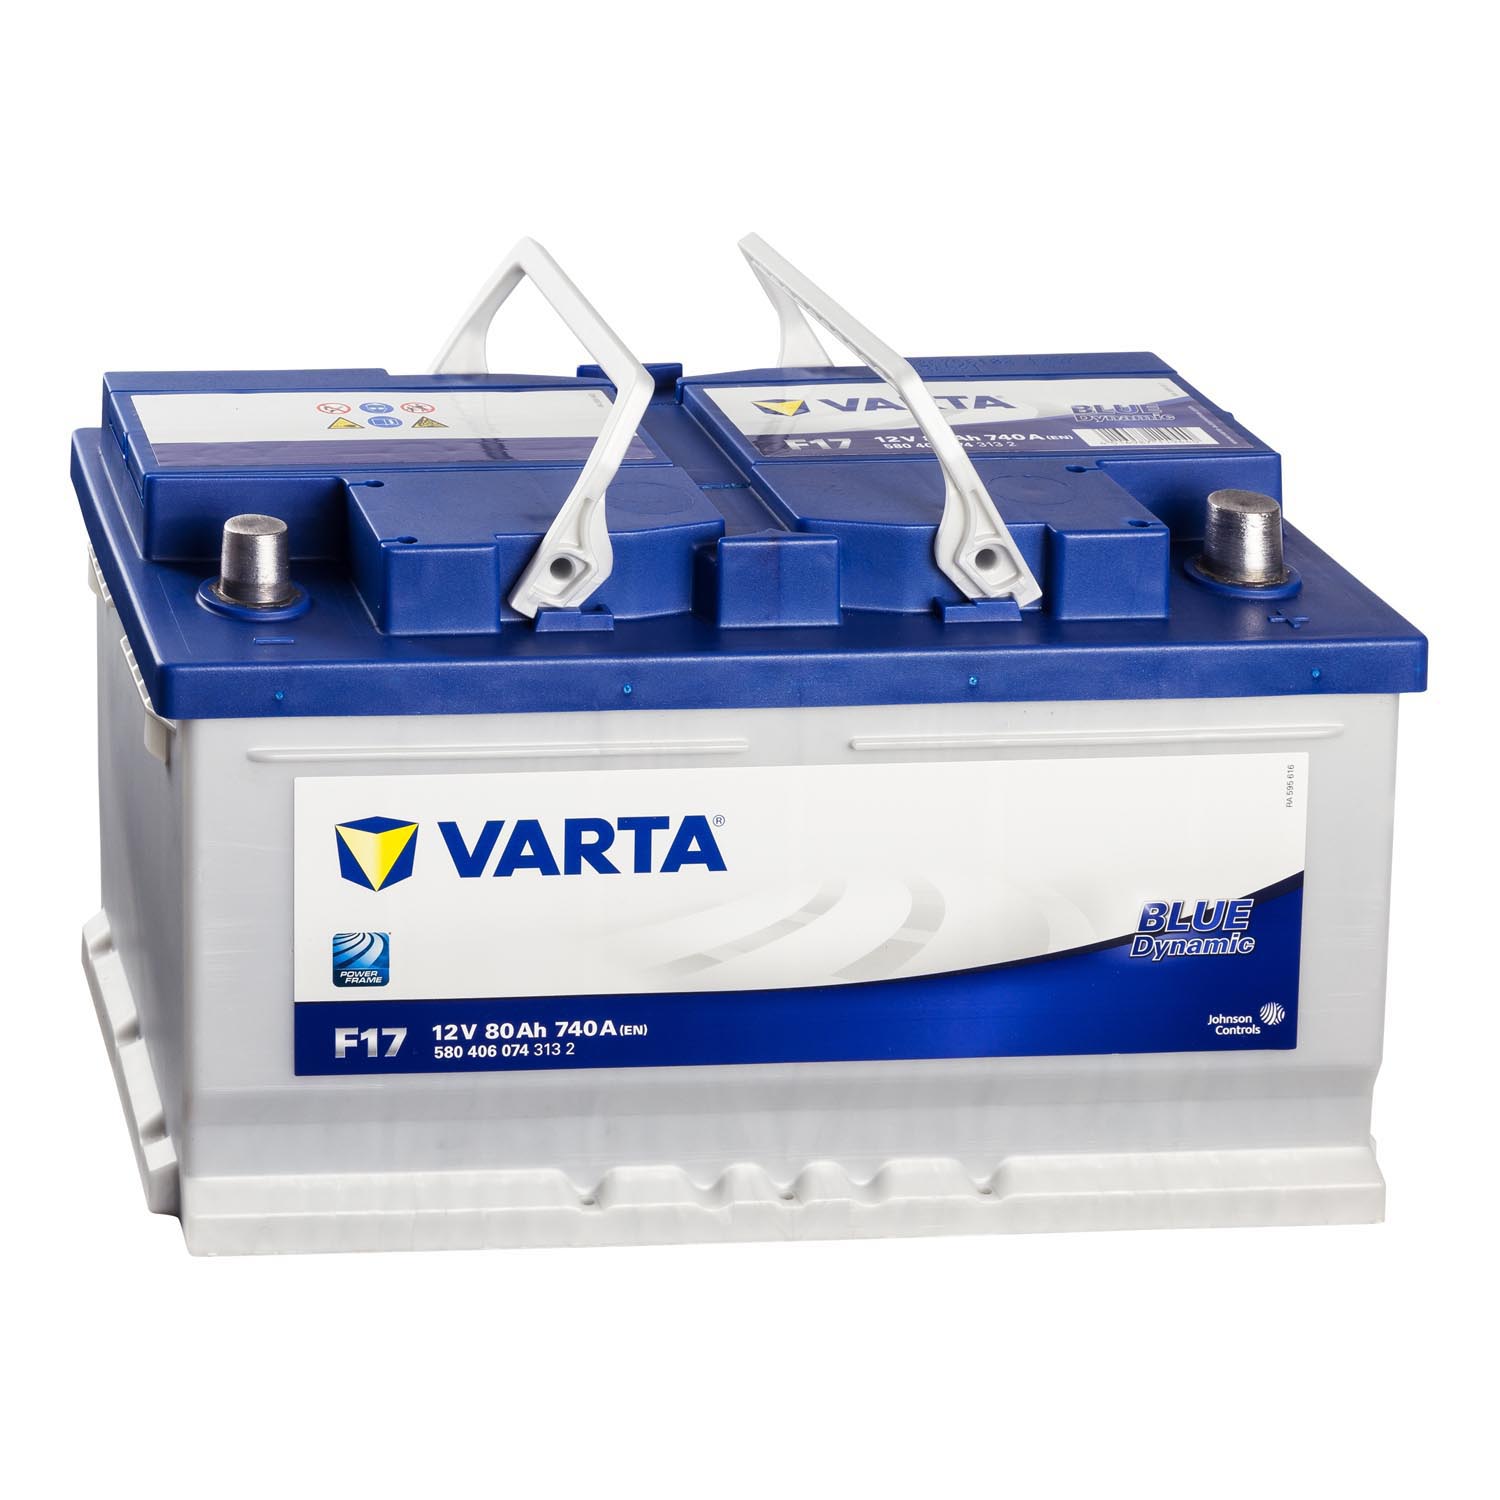 Varta F17, 12V 80Ah Blue Dynamic Autobatterie Varta. TecDoc: .